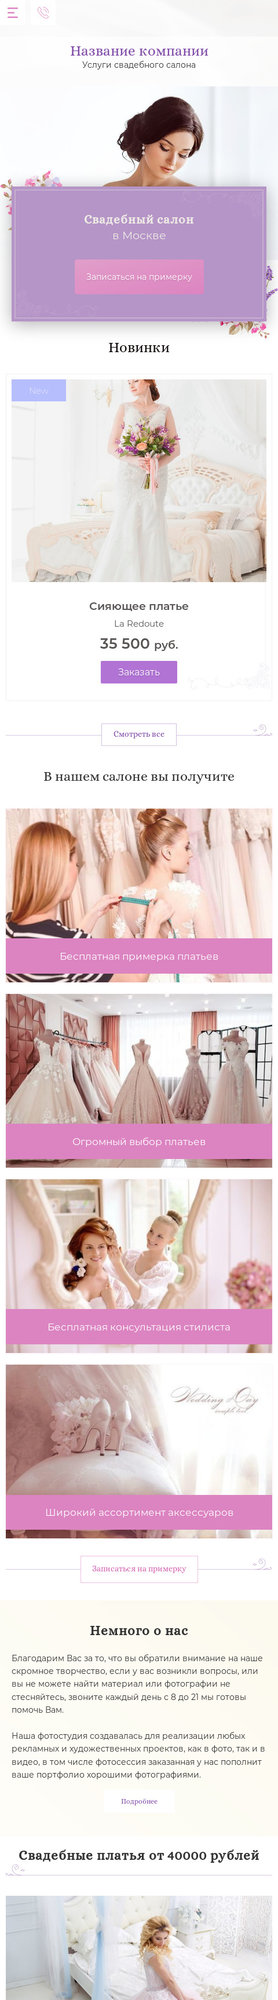 Готовый Сайт-Бизнес № 2254551 - Услуги свадебного салона (Мобильная версия)